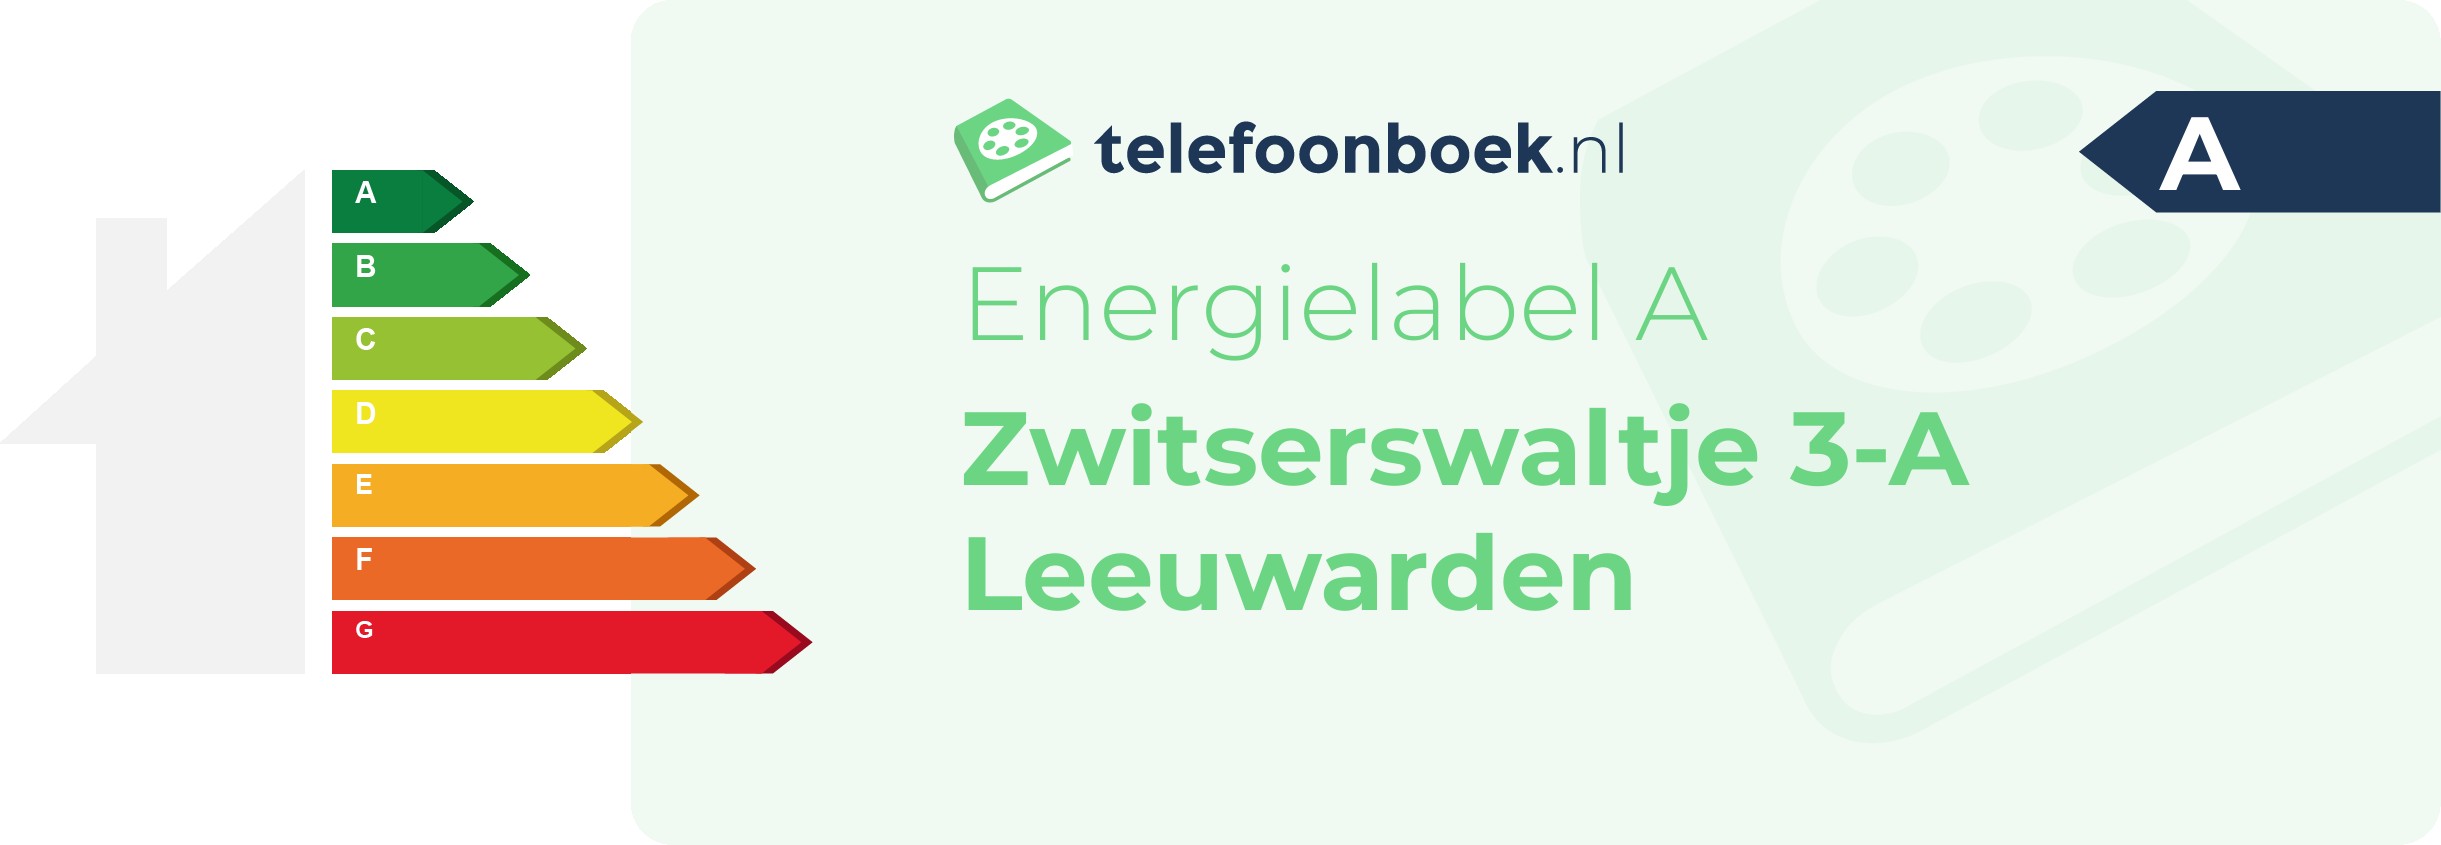 Energielabel Zwitserswaltje 3-A Leeuwarden